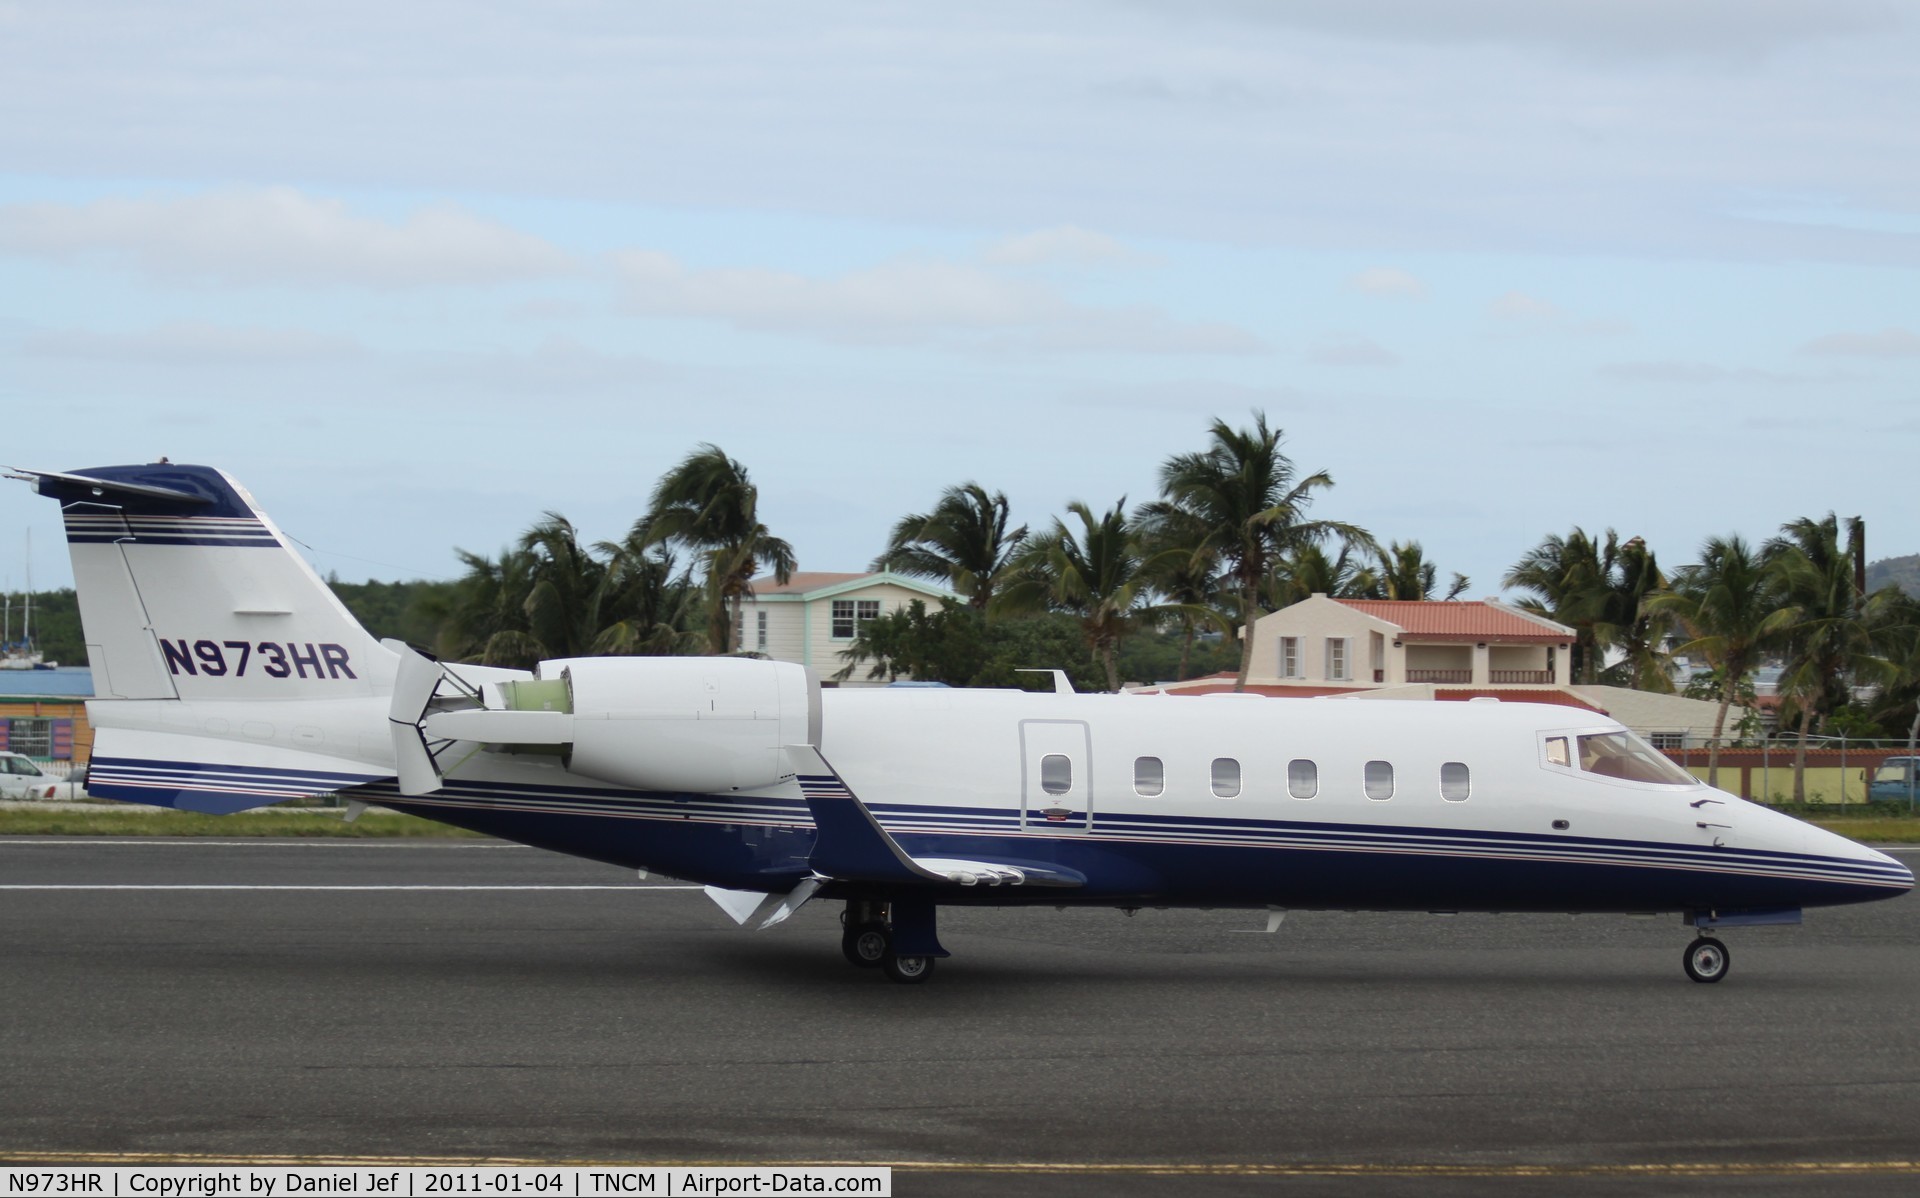 N973HR, Learjet Inc 60 C/N 260, N973Hr just landed at TNCM